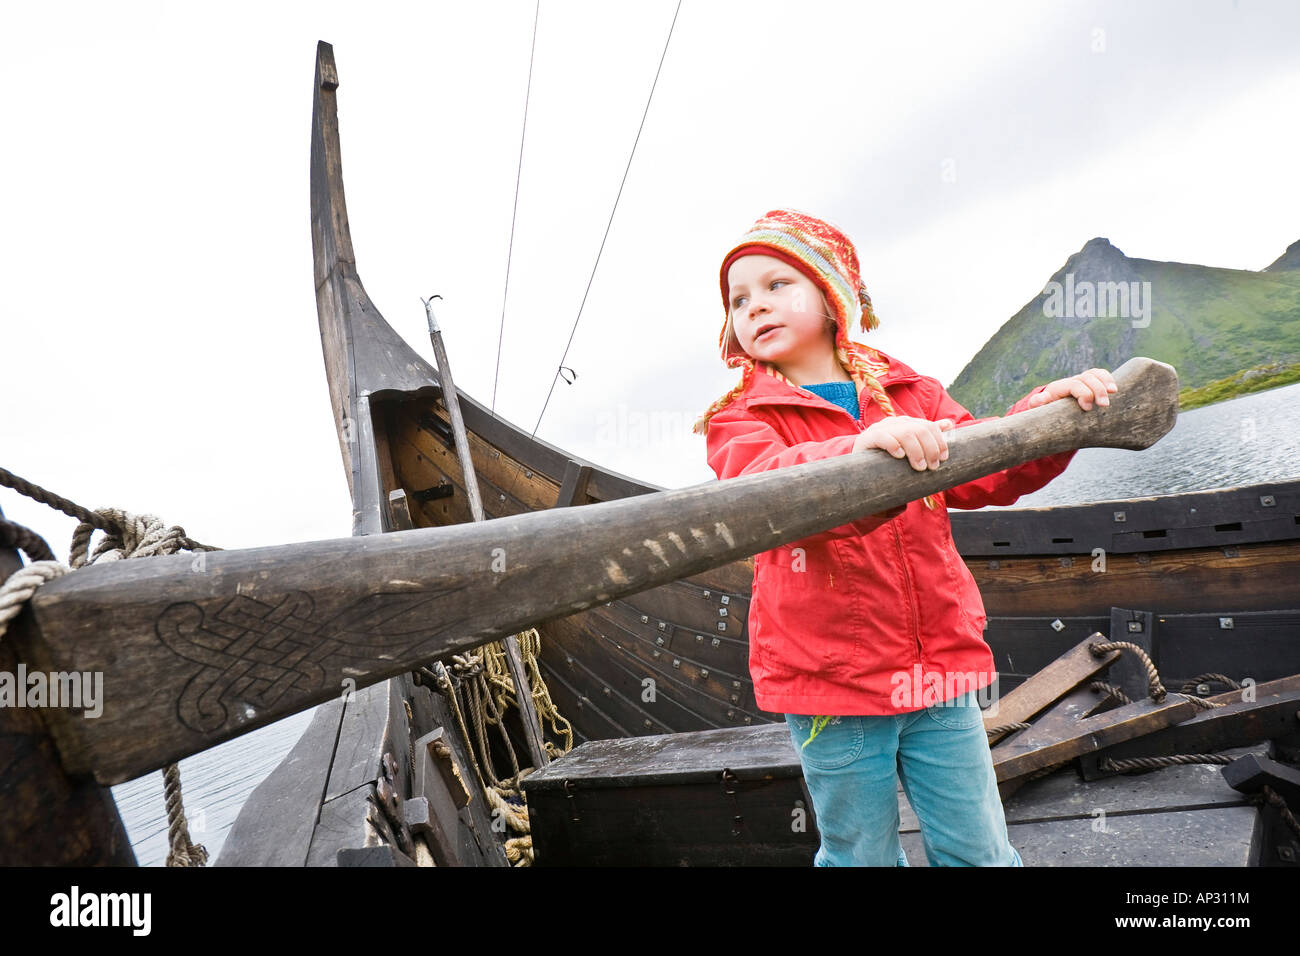 Mädchen am Ruder, Ruder eine Vikingship Wikingermuseum Borg, Lofoten, Norwegen Stockfoto